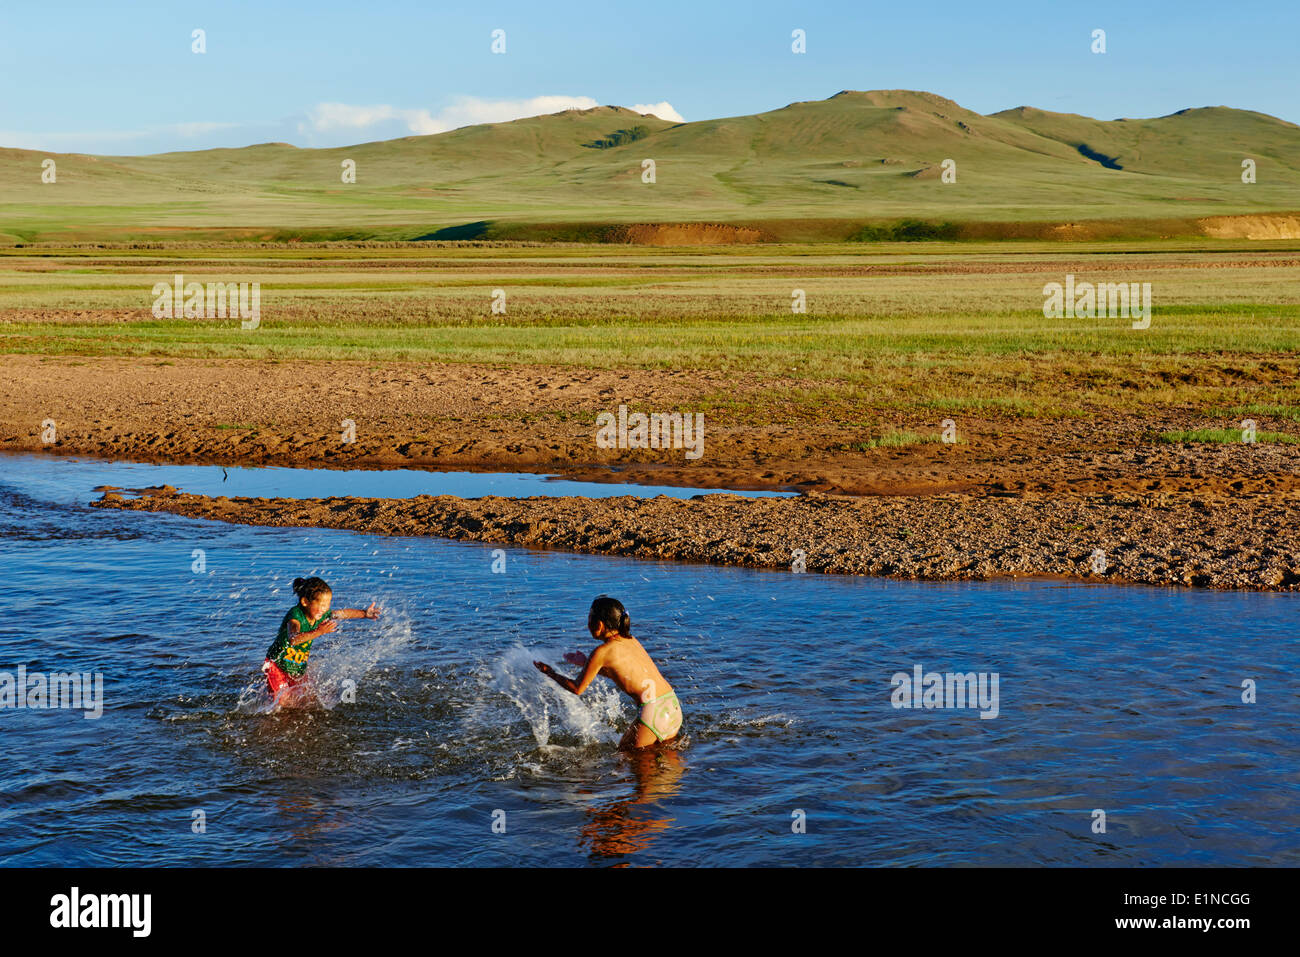 Mongolia, Zavkhan provincia, accampamento nomade, bambini che giocano nel fiume Foto Stock